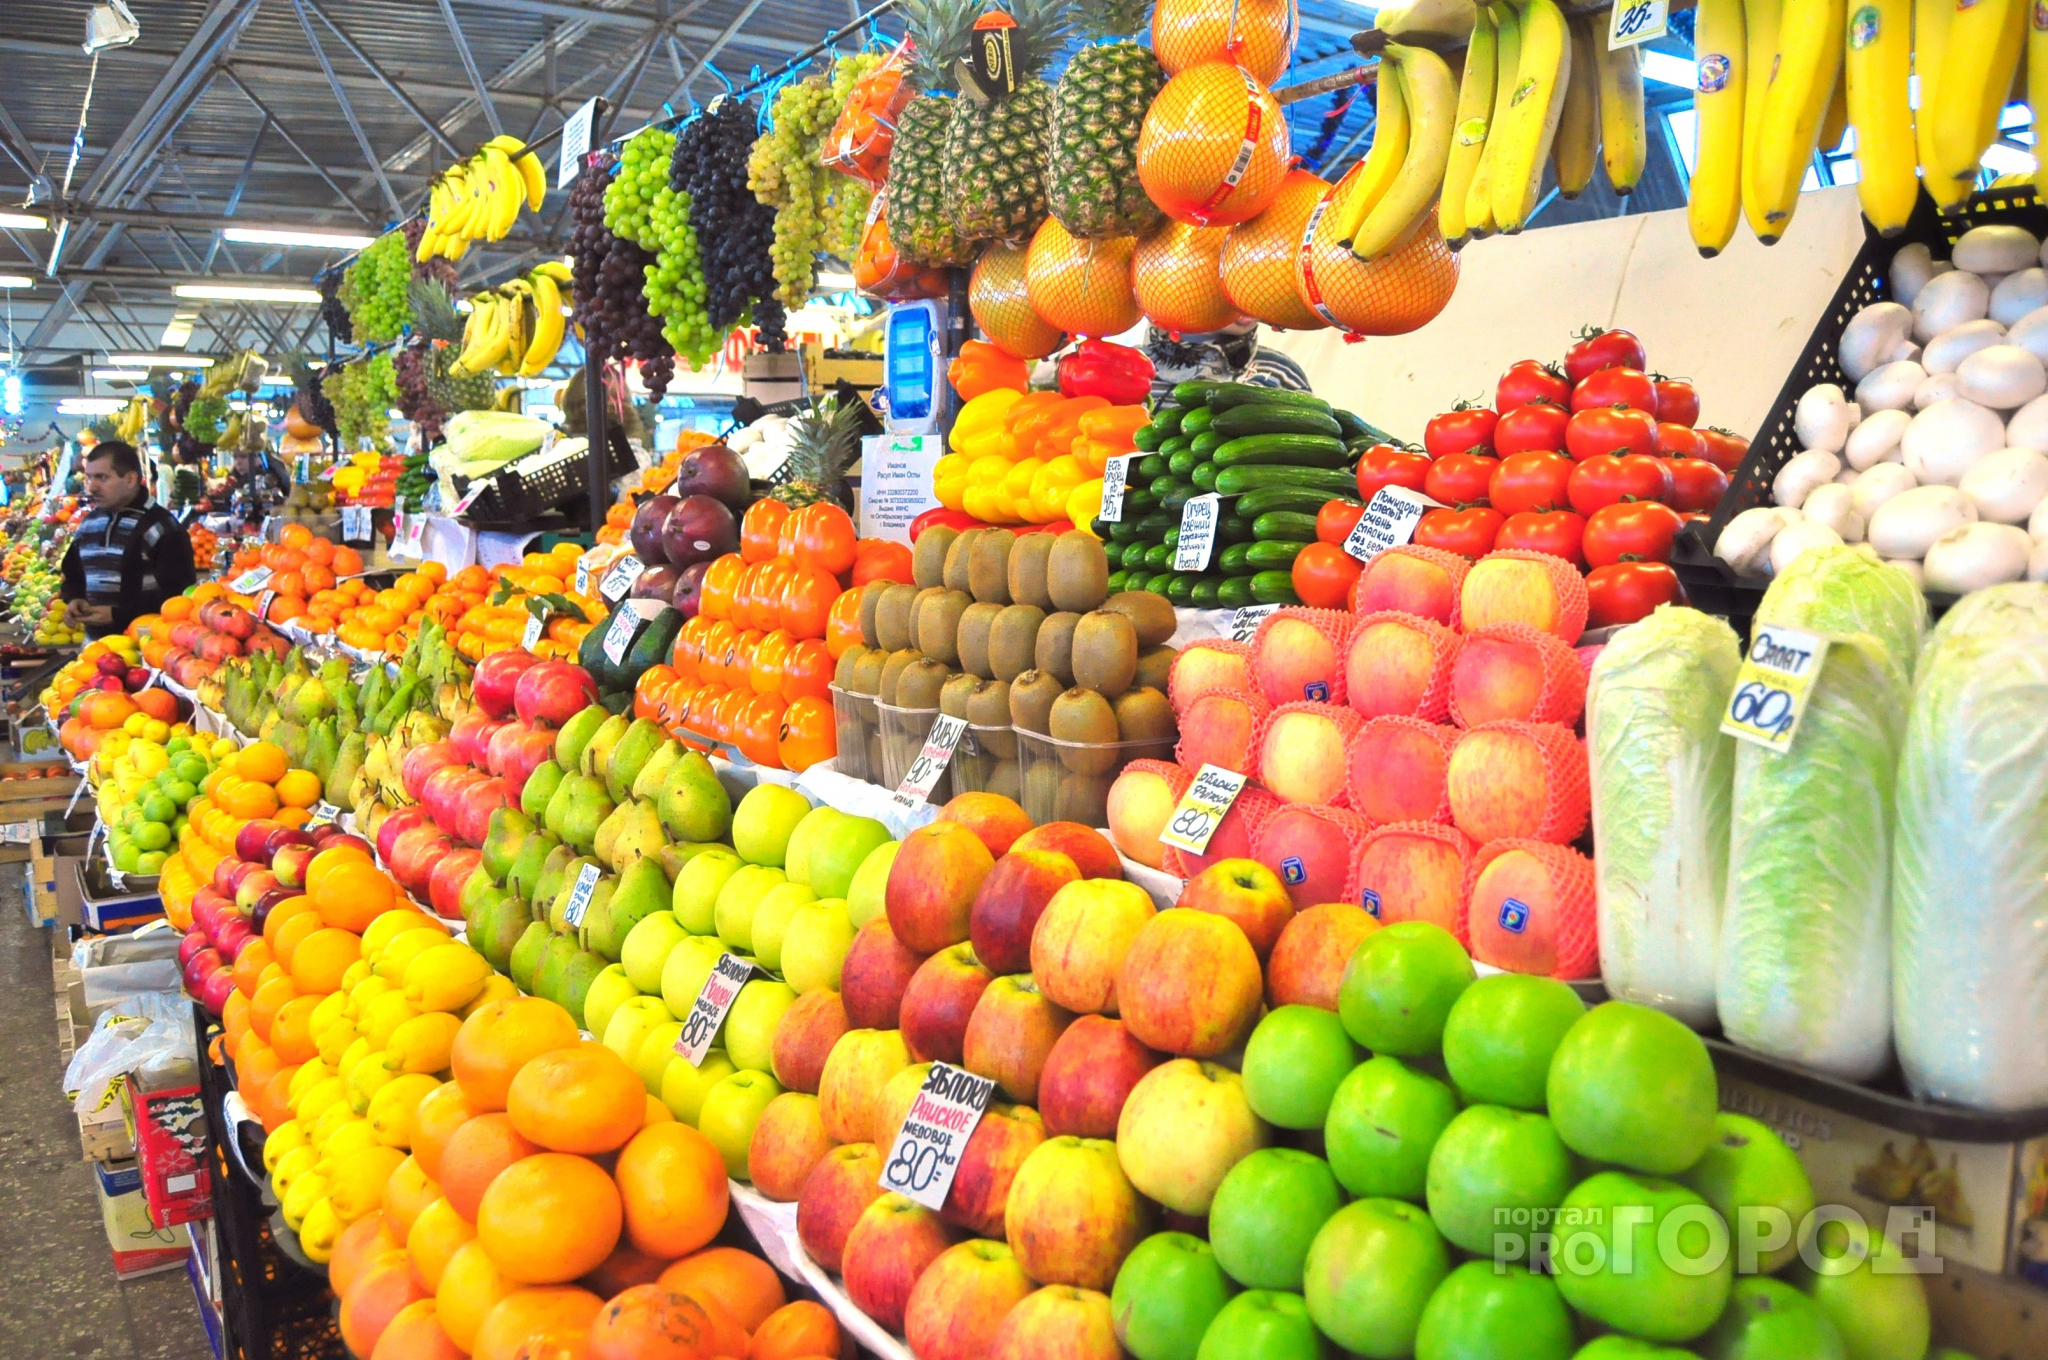 Советы для йошкаролинцев: как на рынке выбрать вкусные овощи, ягоды и фрукты